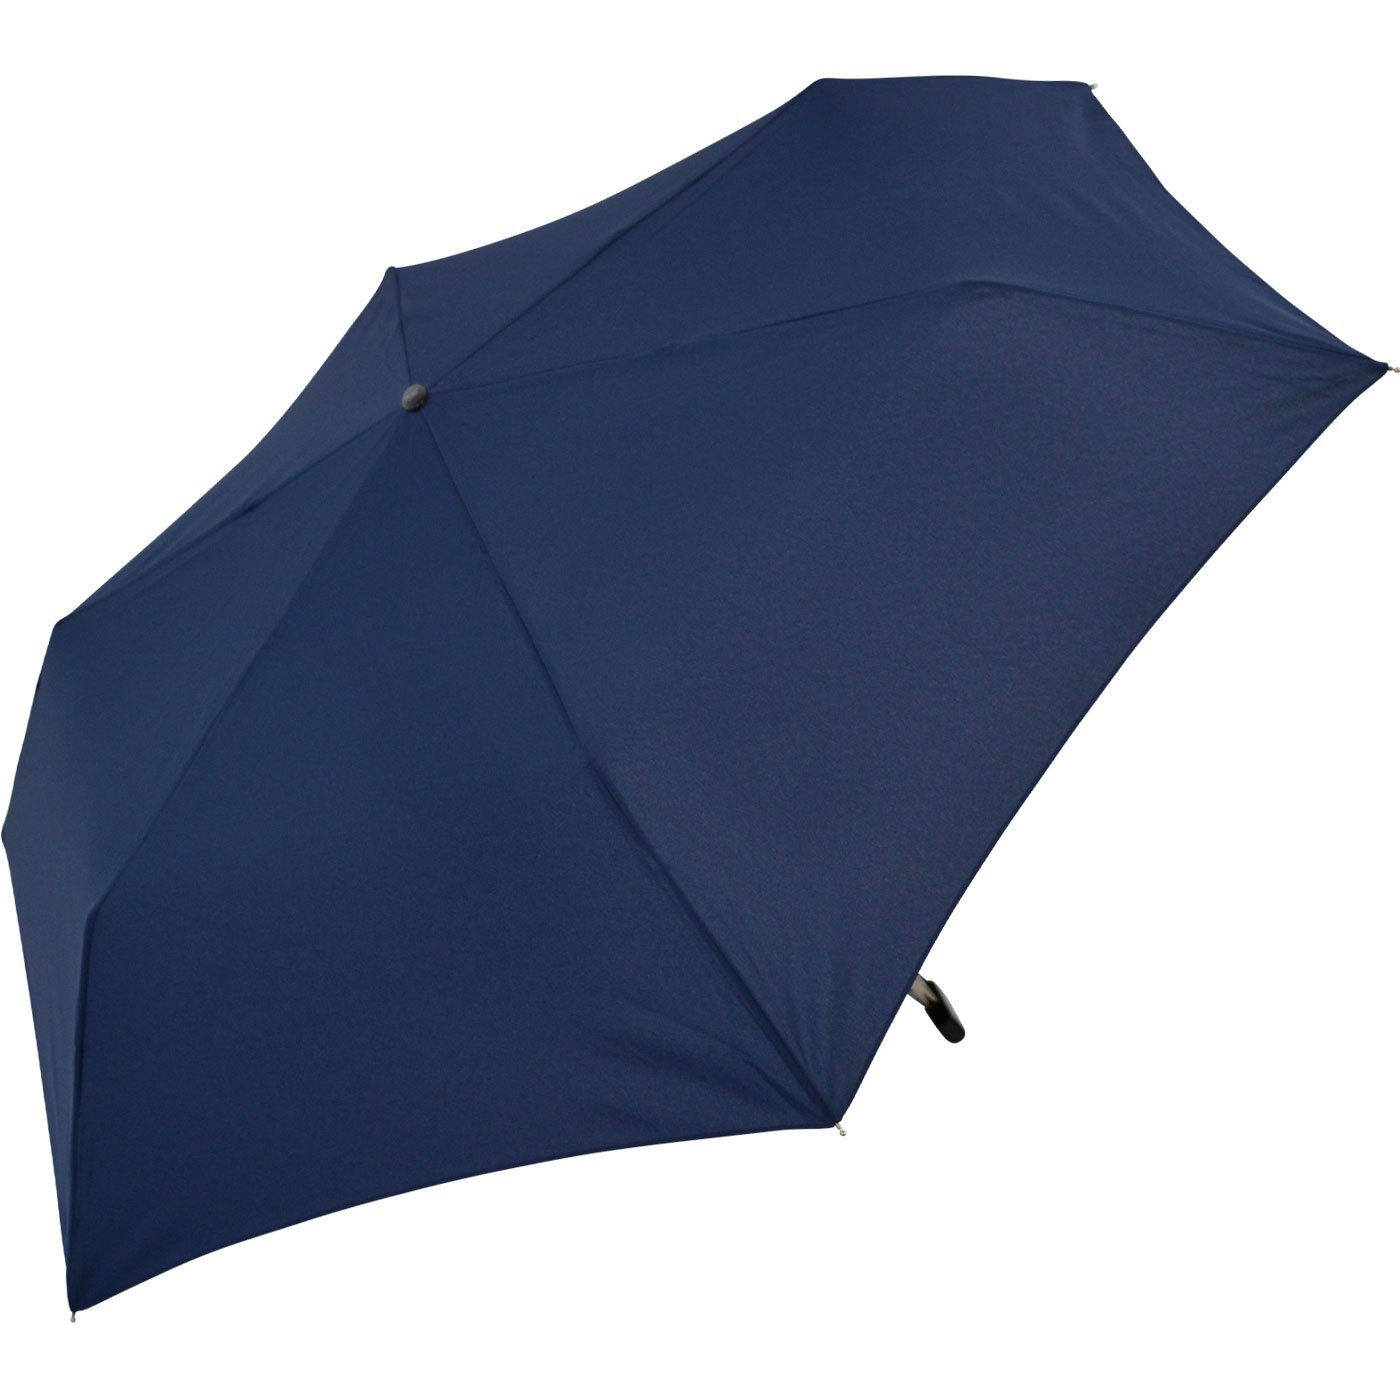 2,5cm Taschenregenschirm flacher extra-flach dunkelblau nur Minischirm super Steel hoch, Flat iX-brella